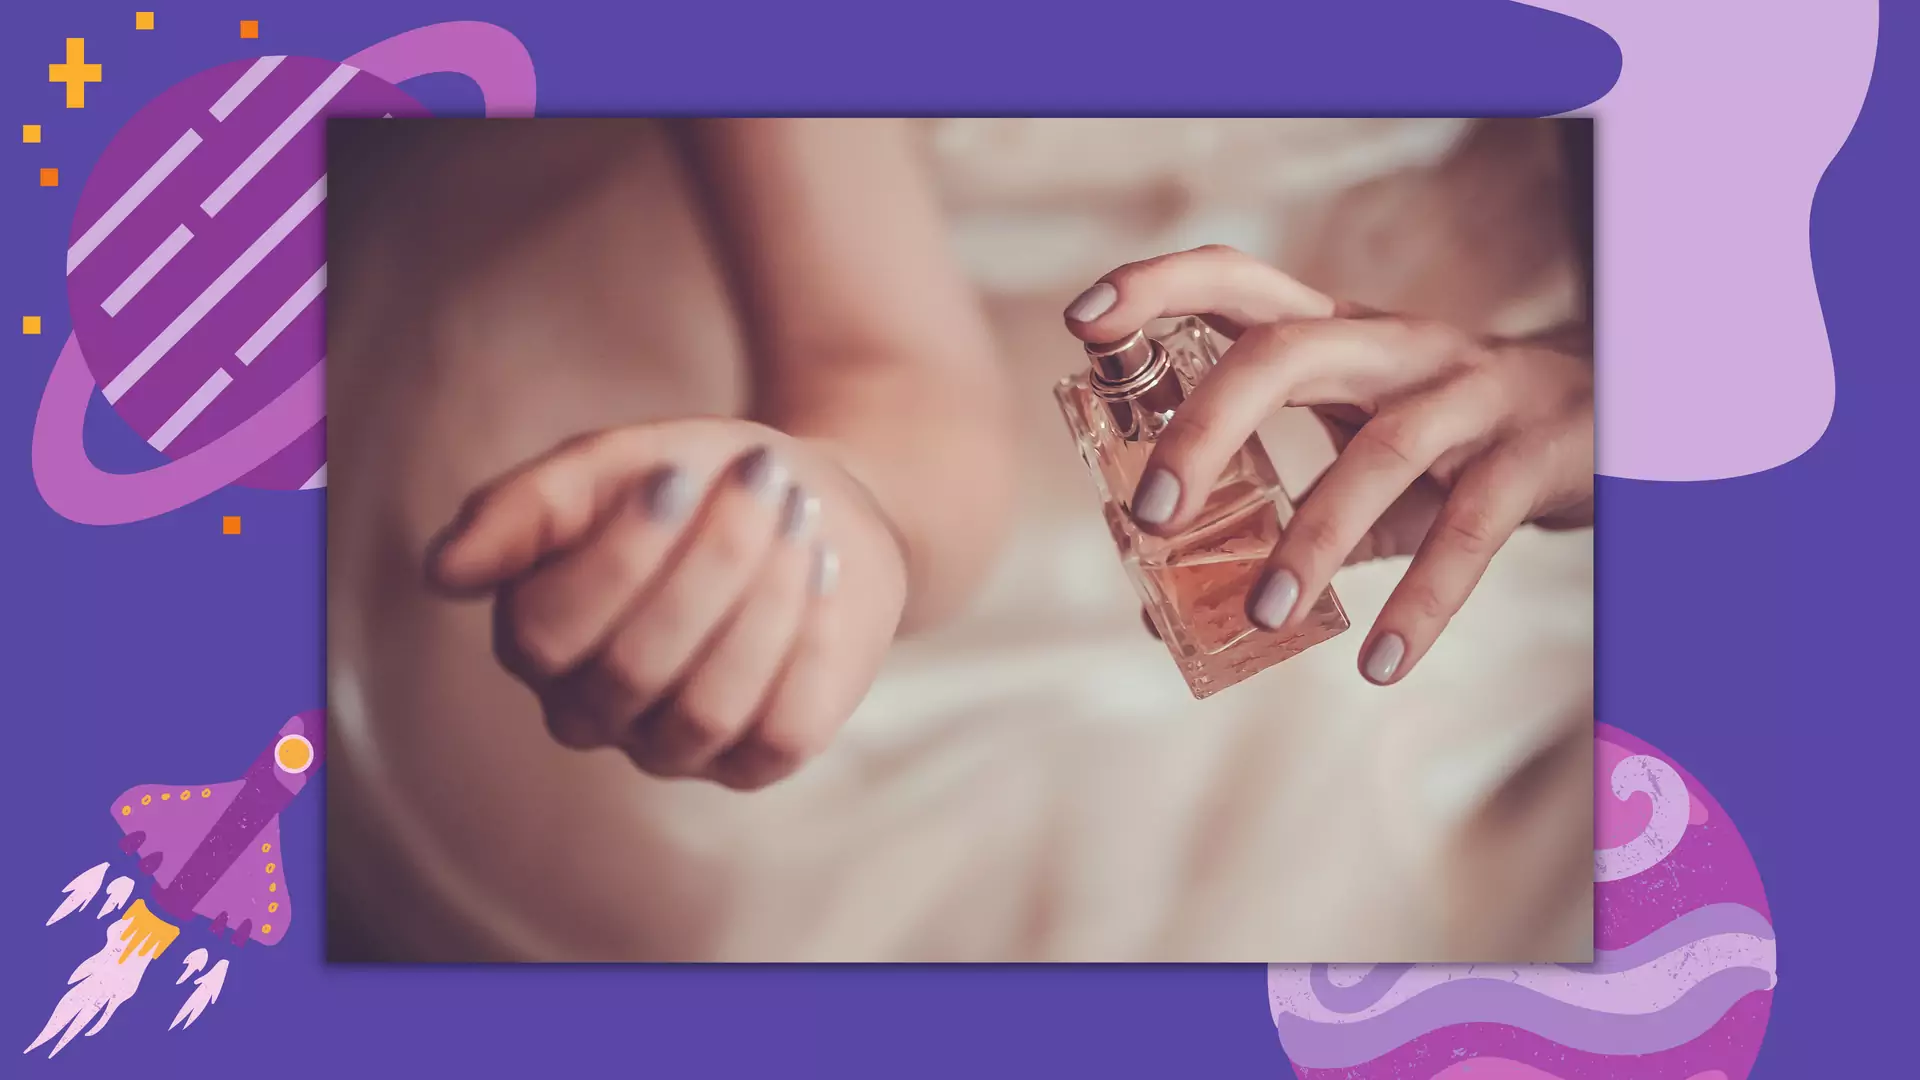 Szukasz nowych perfum? Twój znak zodiaku powie ci, jaki zapach wybrać